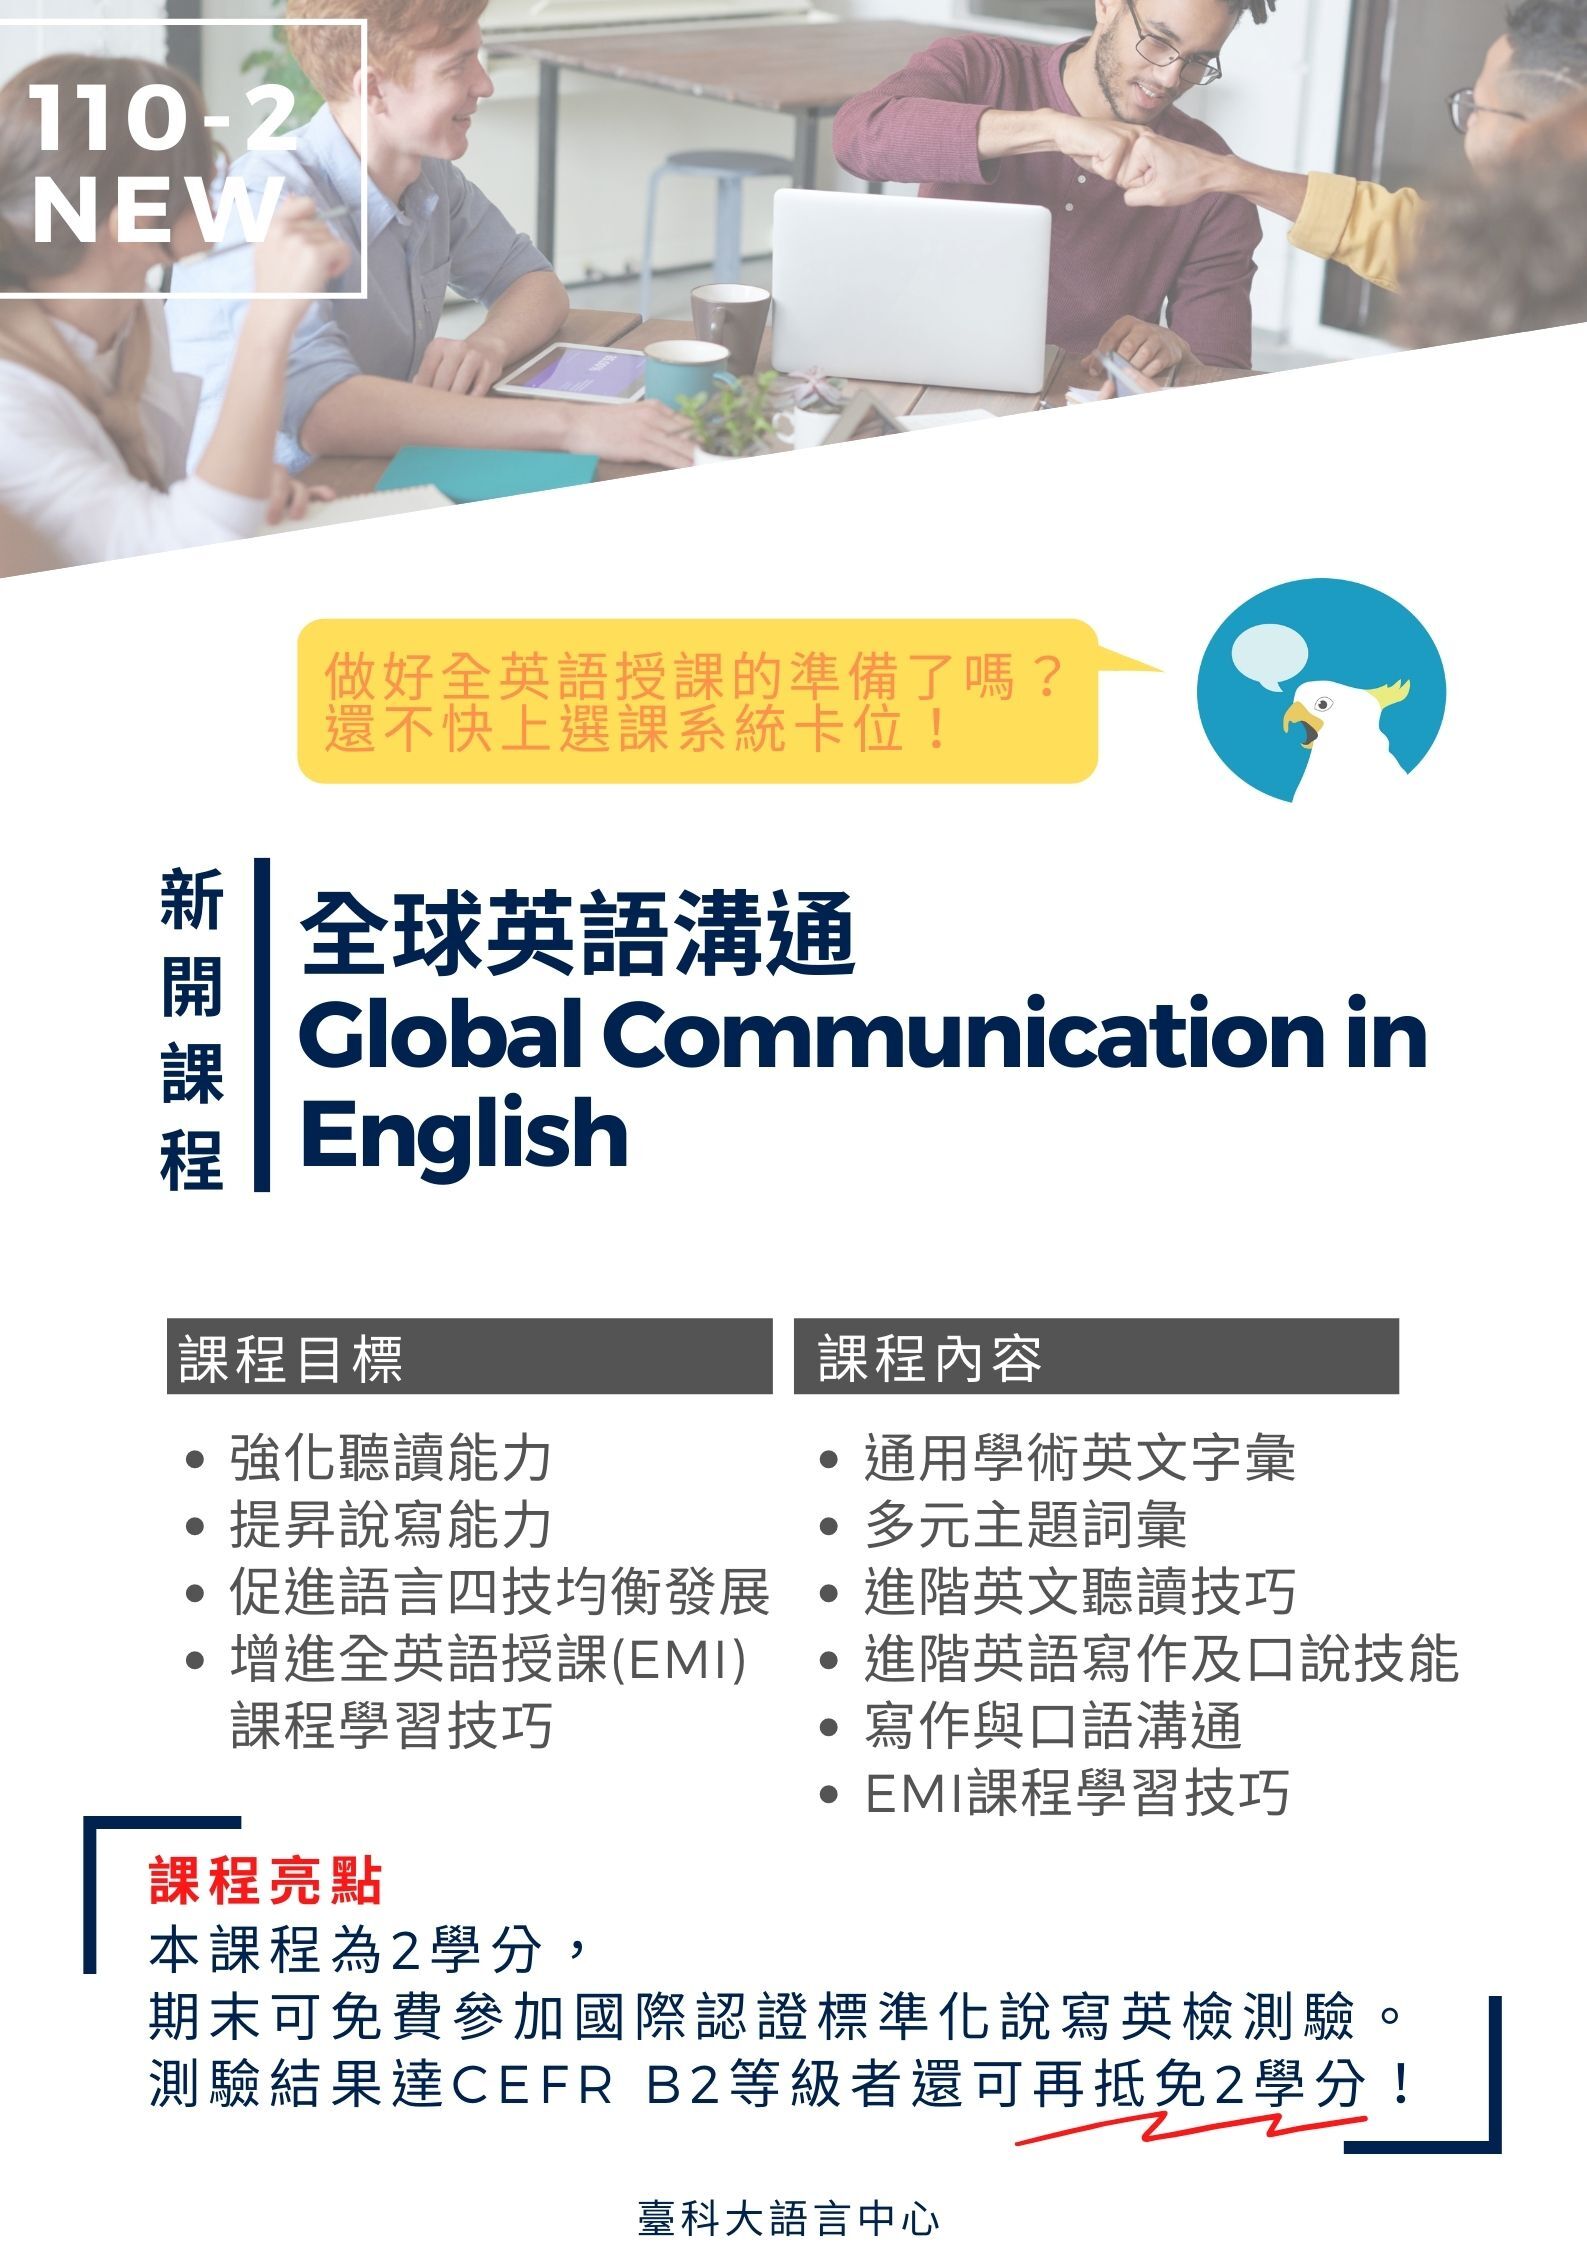 全球英語溝通課程介紹